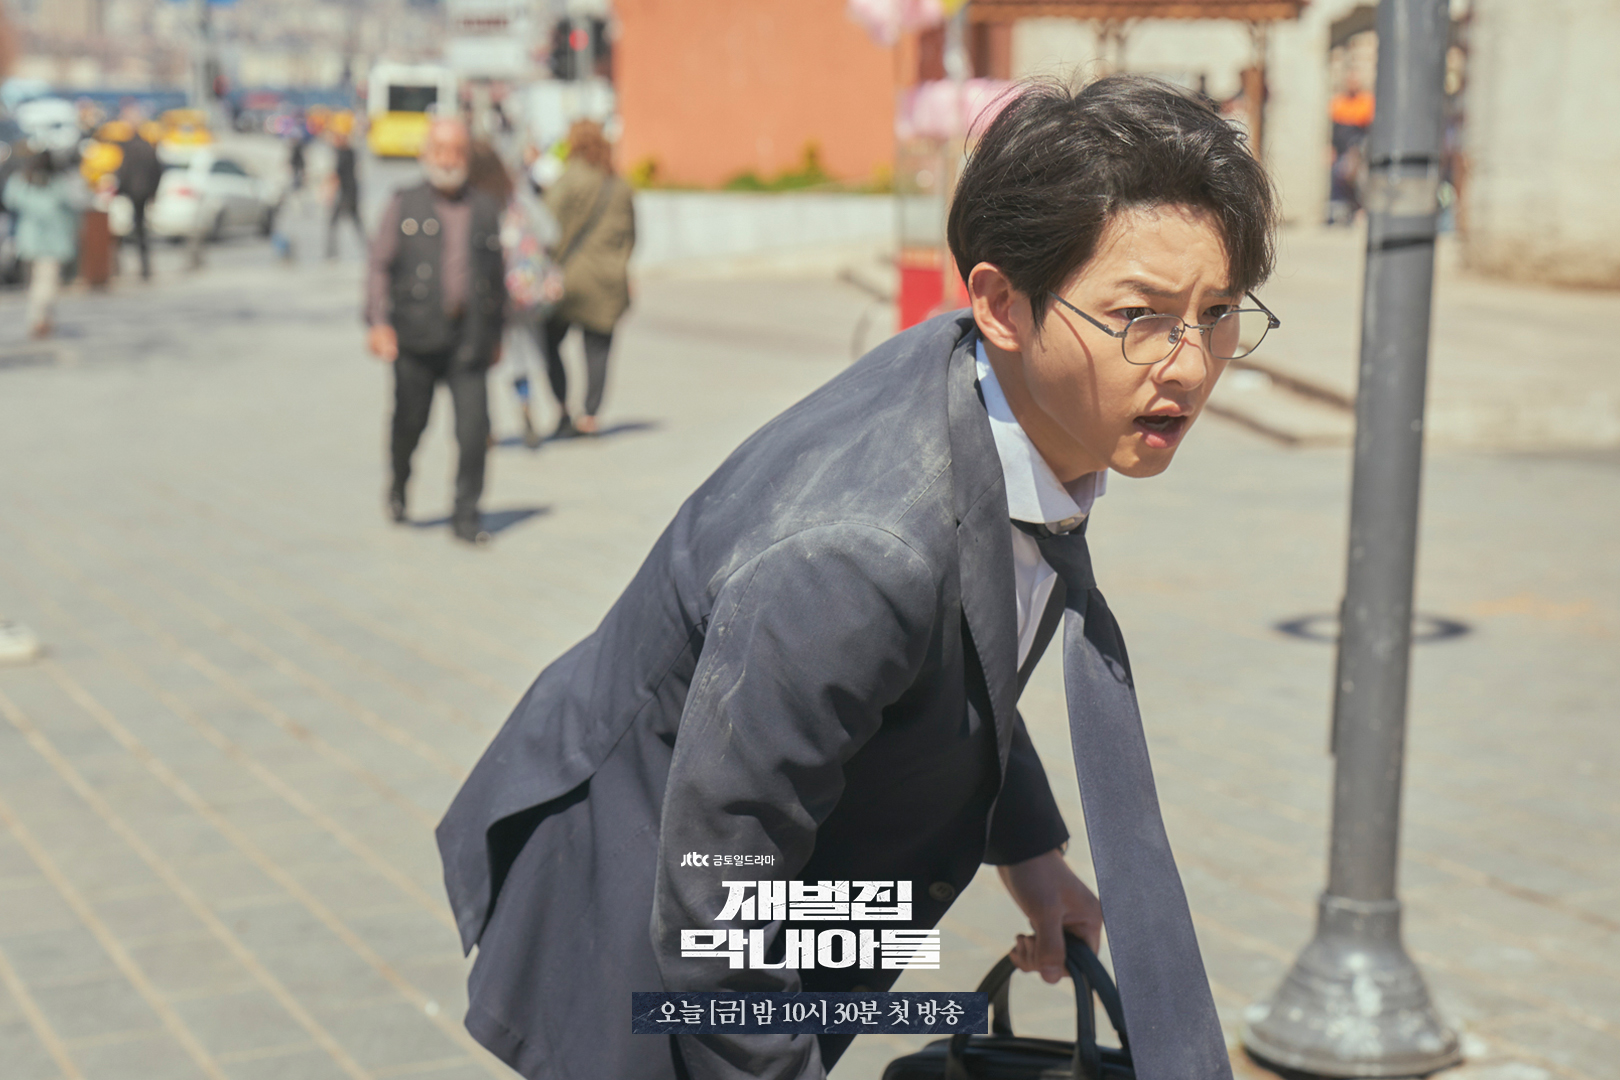 Đối thủ của Song Joong Ki trong Cậu Út Nhà Tài Phiệt: Tưởng ai xa lạ nào ngờ toàn người ở sát cạnh bên - Ảnh 1.